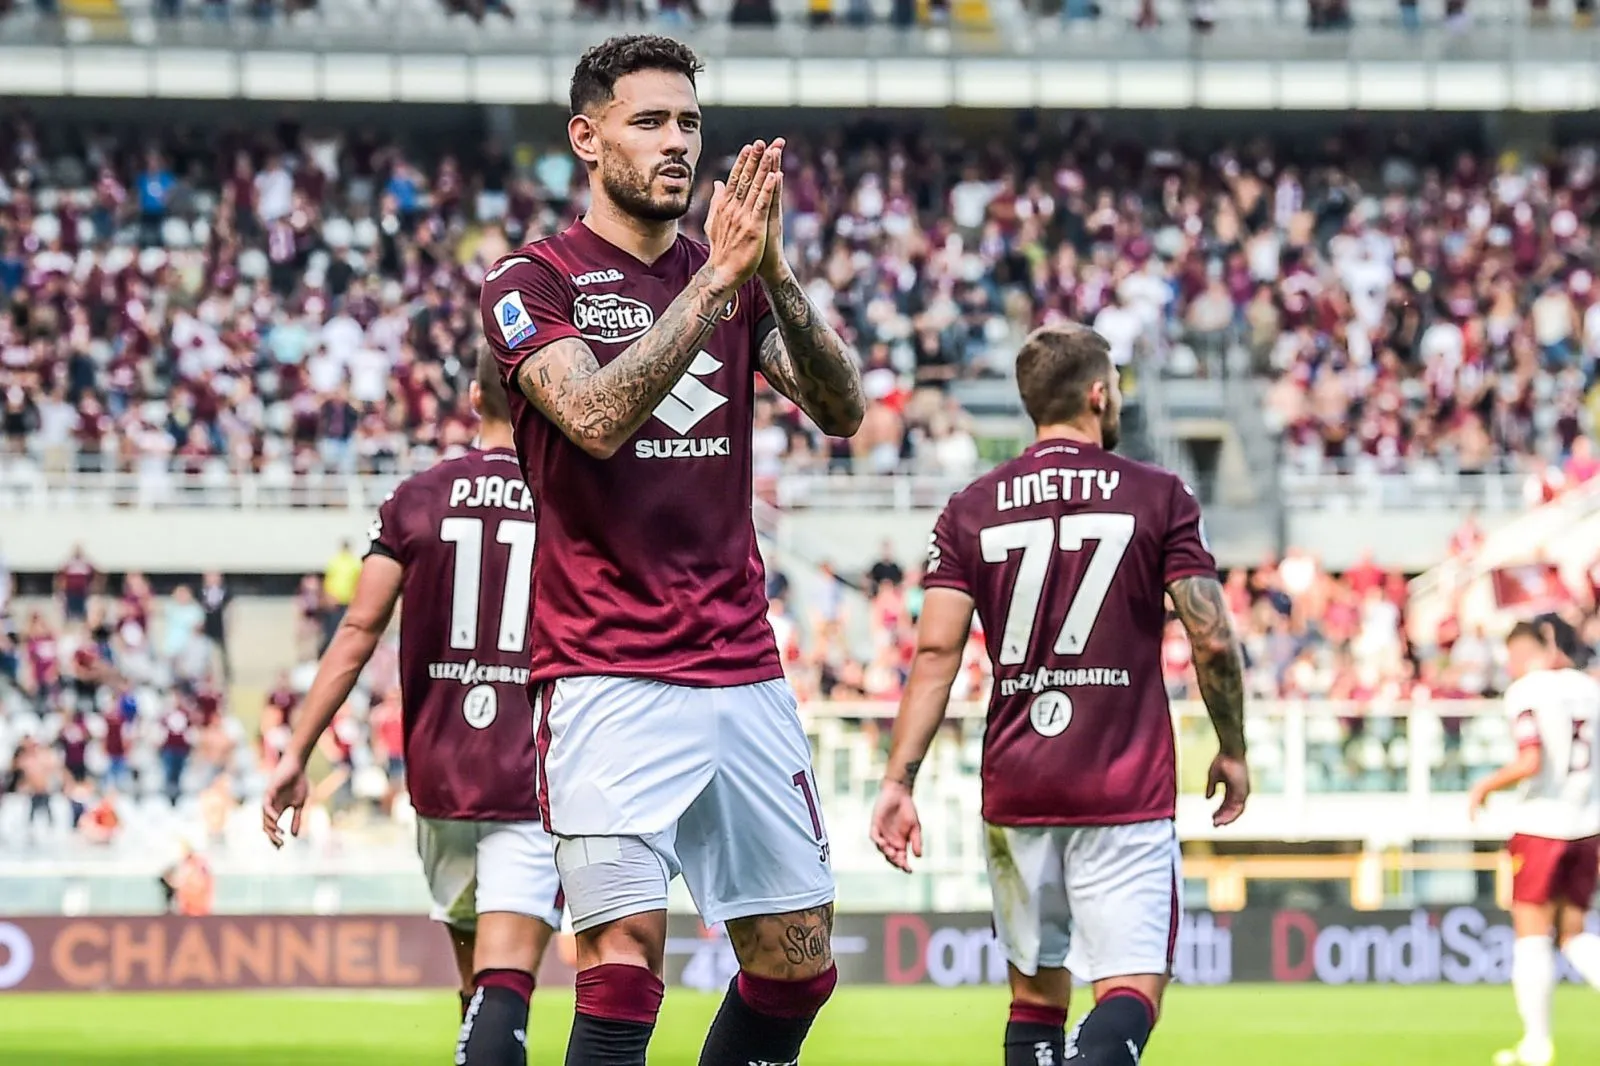 Pronostic Torino Atalanta : Analyse, cotes et prono du match de Serie A